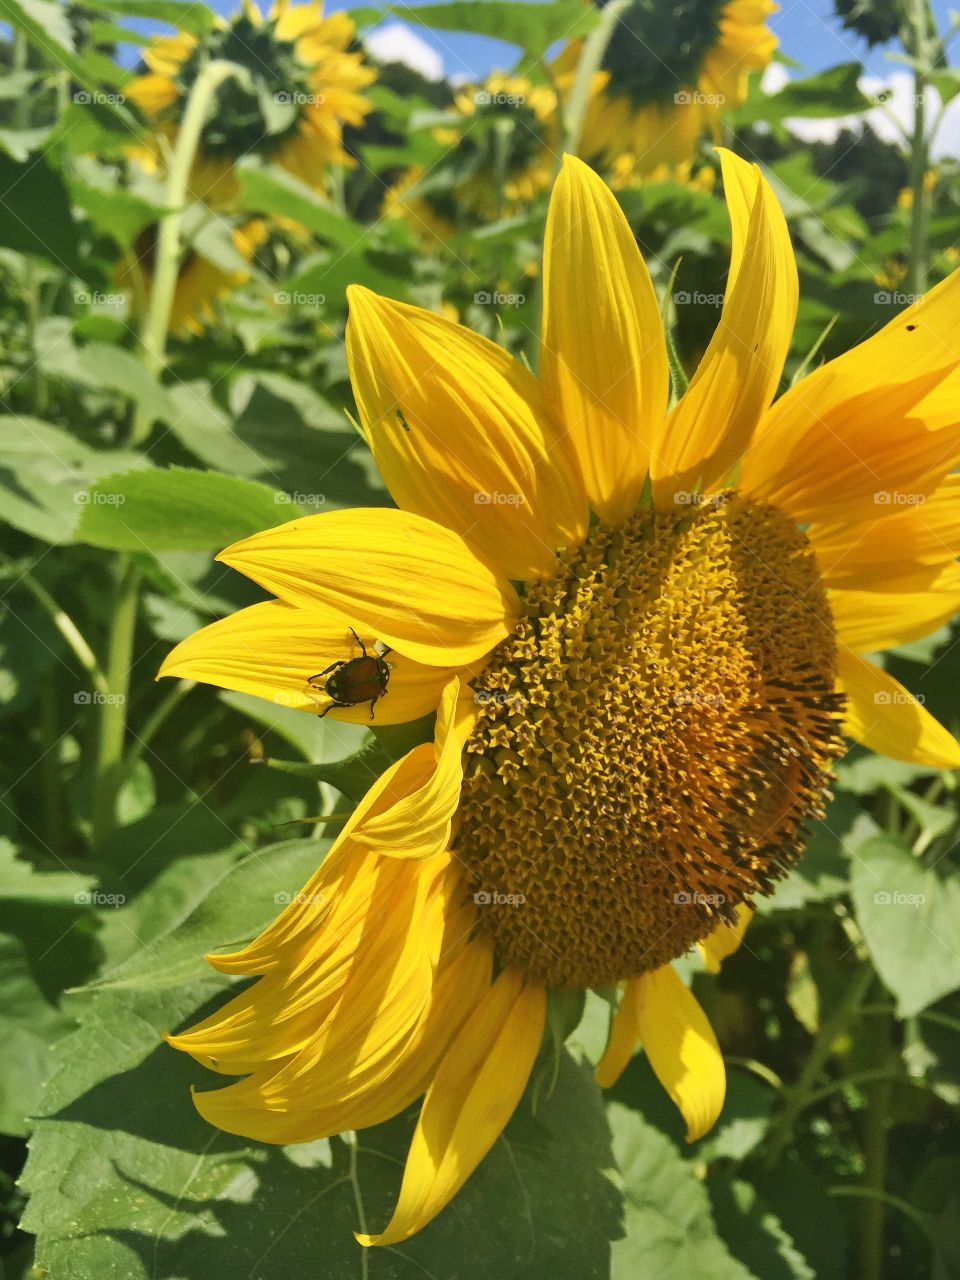 Sunflowers and ladybugs 